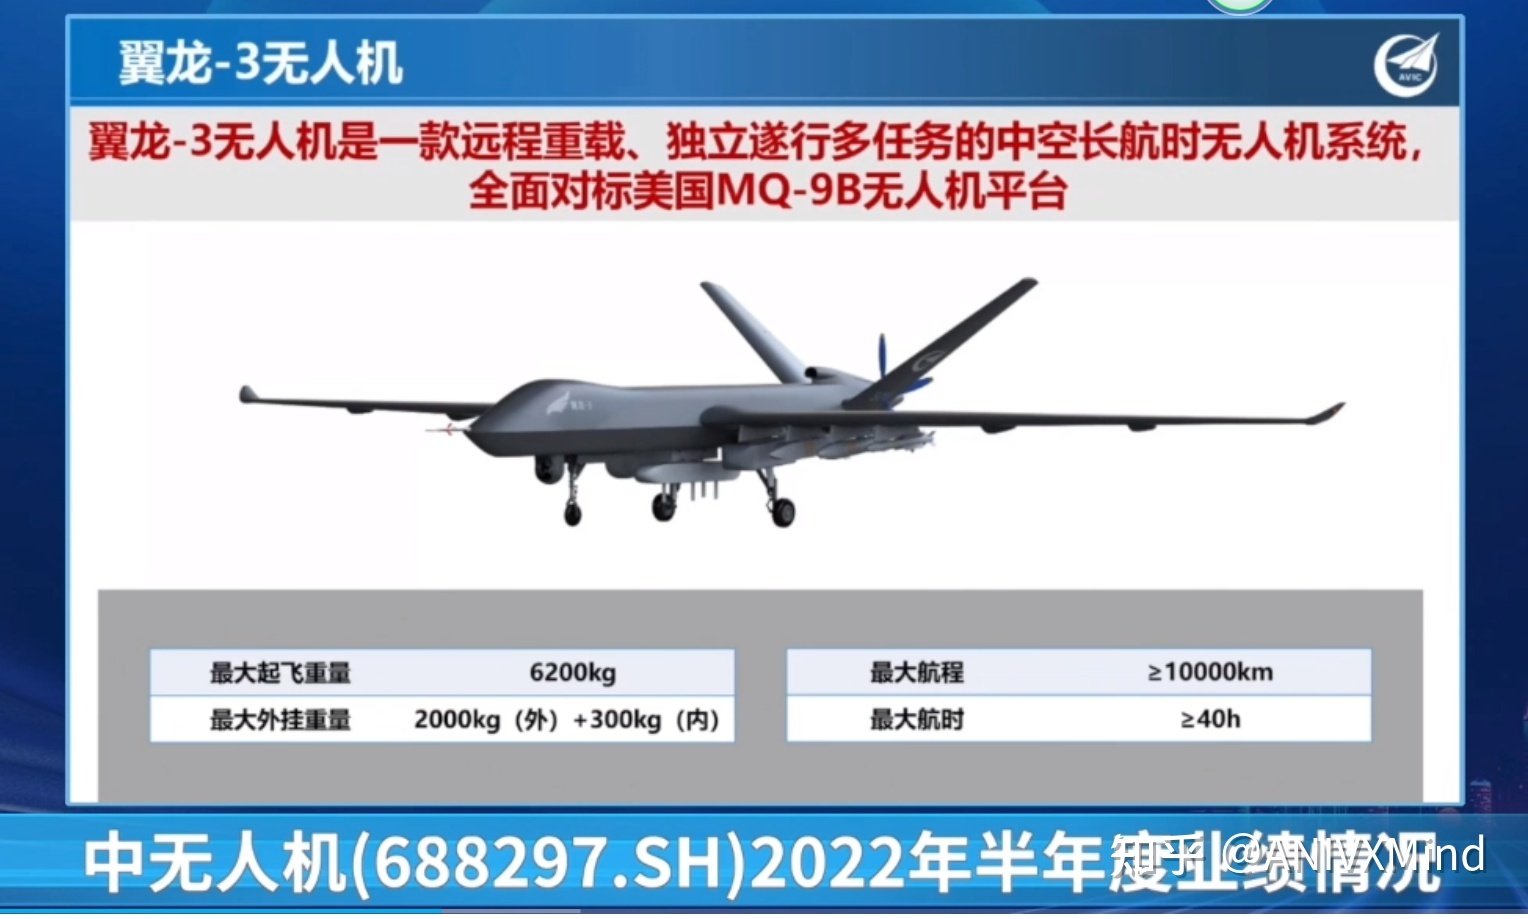 Chiny odsłaniają Wing Loong 3, konkurenta MQ-9B SkyGuardian o zasięgu 10 000 km z rakietami PL-10-2